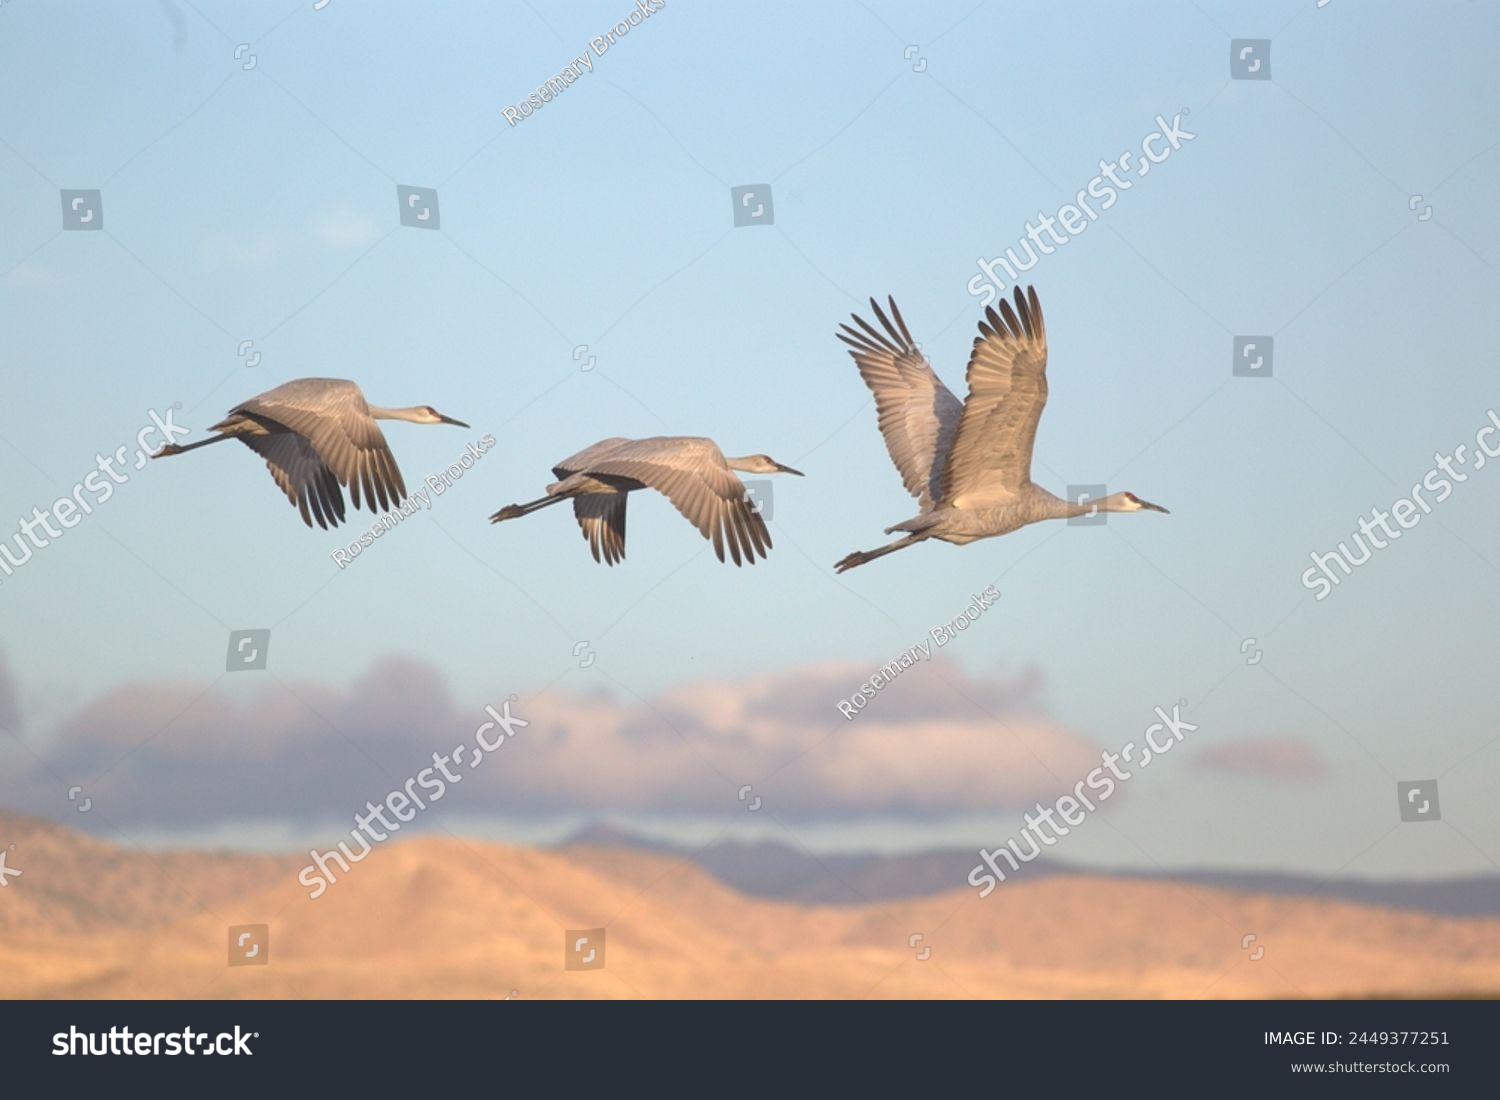 Bosque Del Apache, Three Sandhill Cranes #2449377251